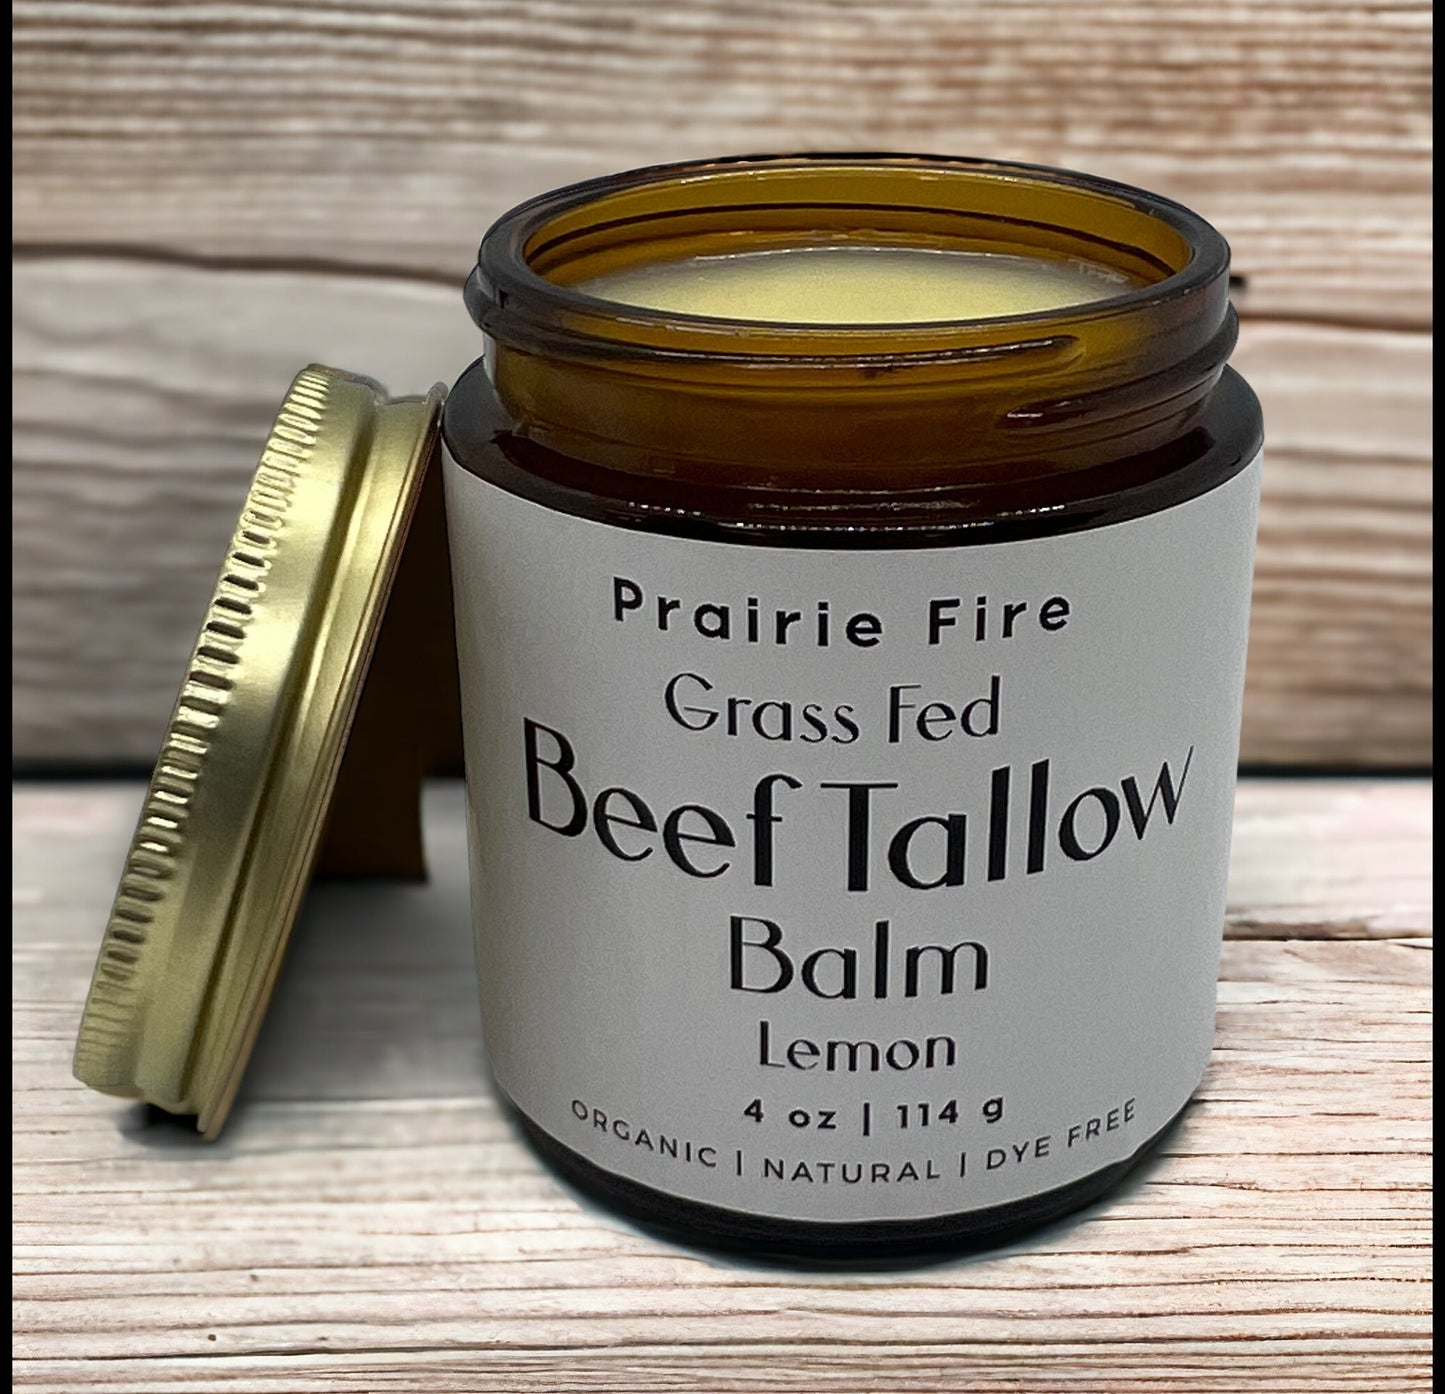 Organic Grass Fed Beef Tallow Balm - 4 oz